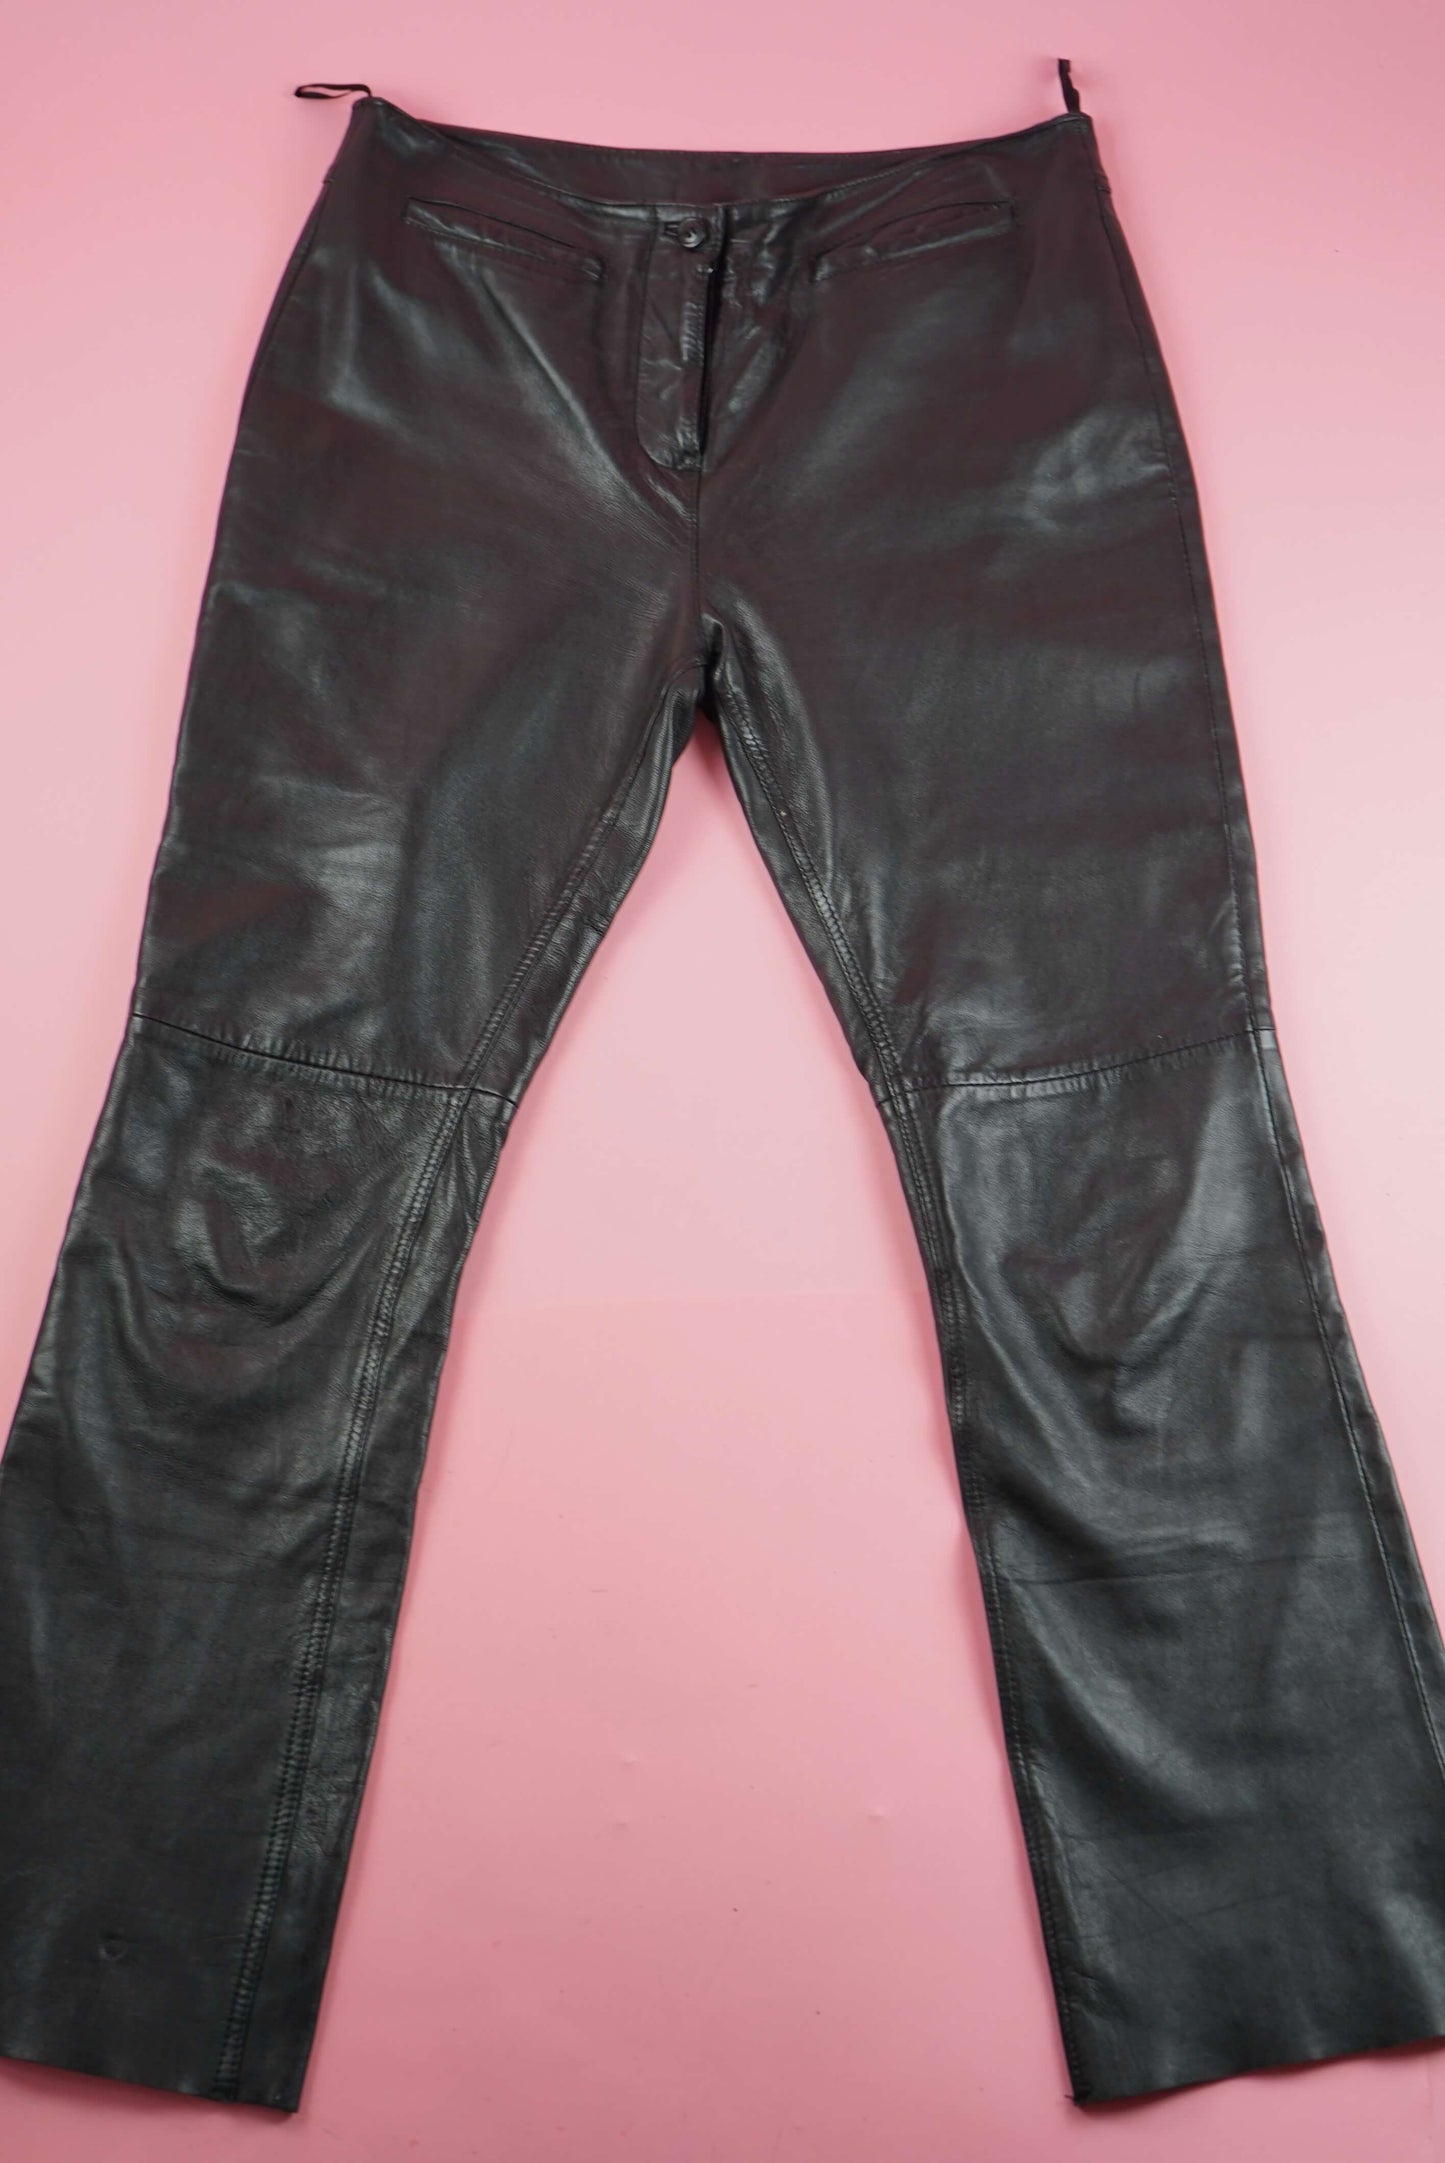 Black Soft Leather Trousers Vintage Bootcut L-XL W35-36 UK Size 16-18 | EU size 46-48